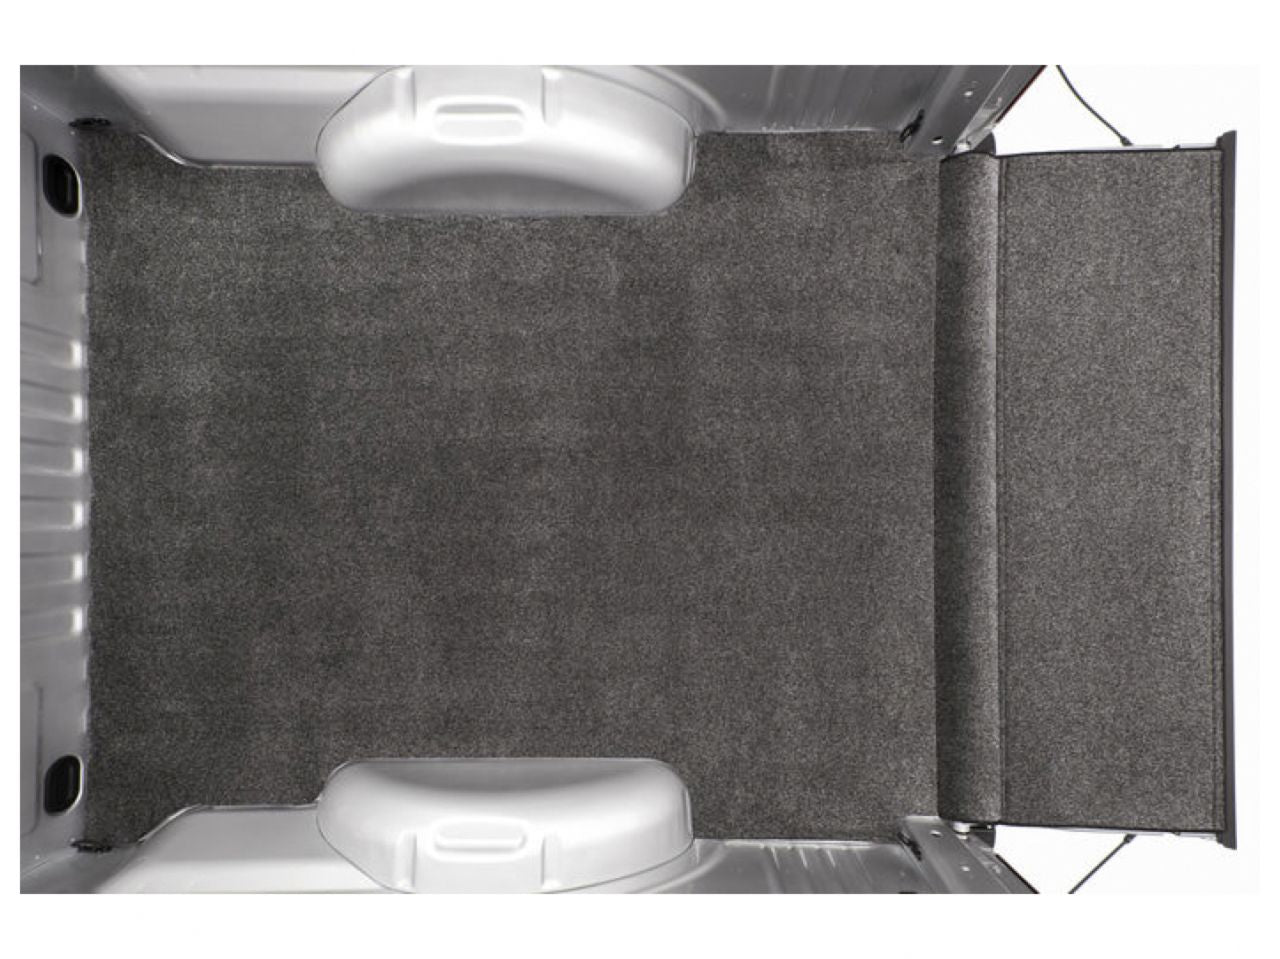 Bedrug XLT Bedmat For Spray-In Or No Bed Liner 05+ Toyota Tacoma 5' Bed